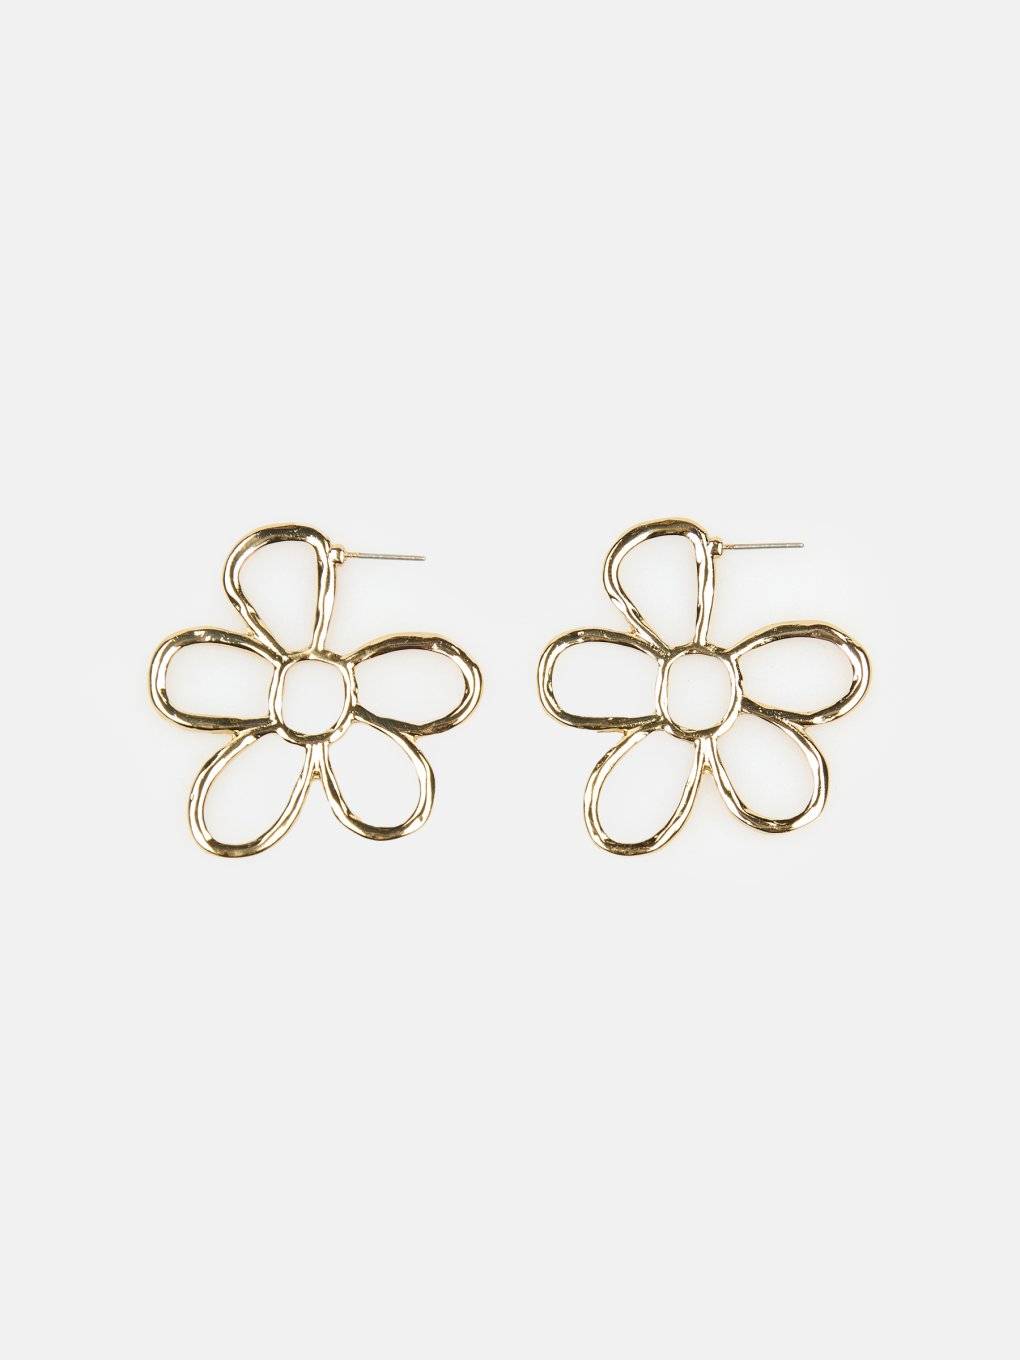 Metal earrings in flower shape